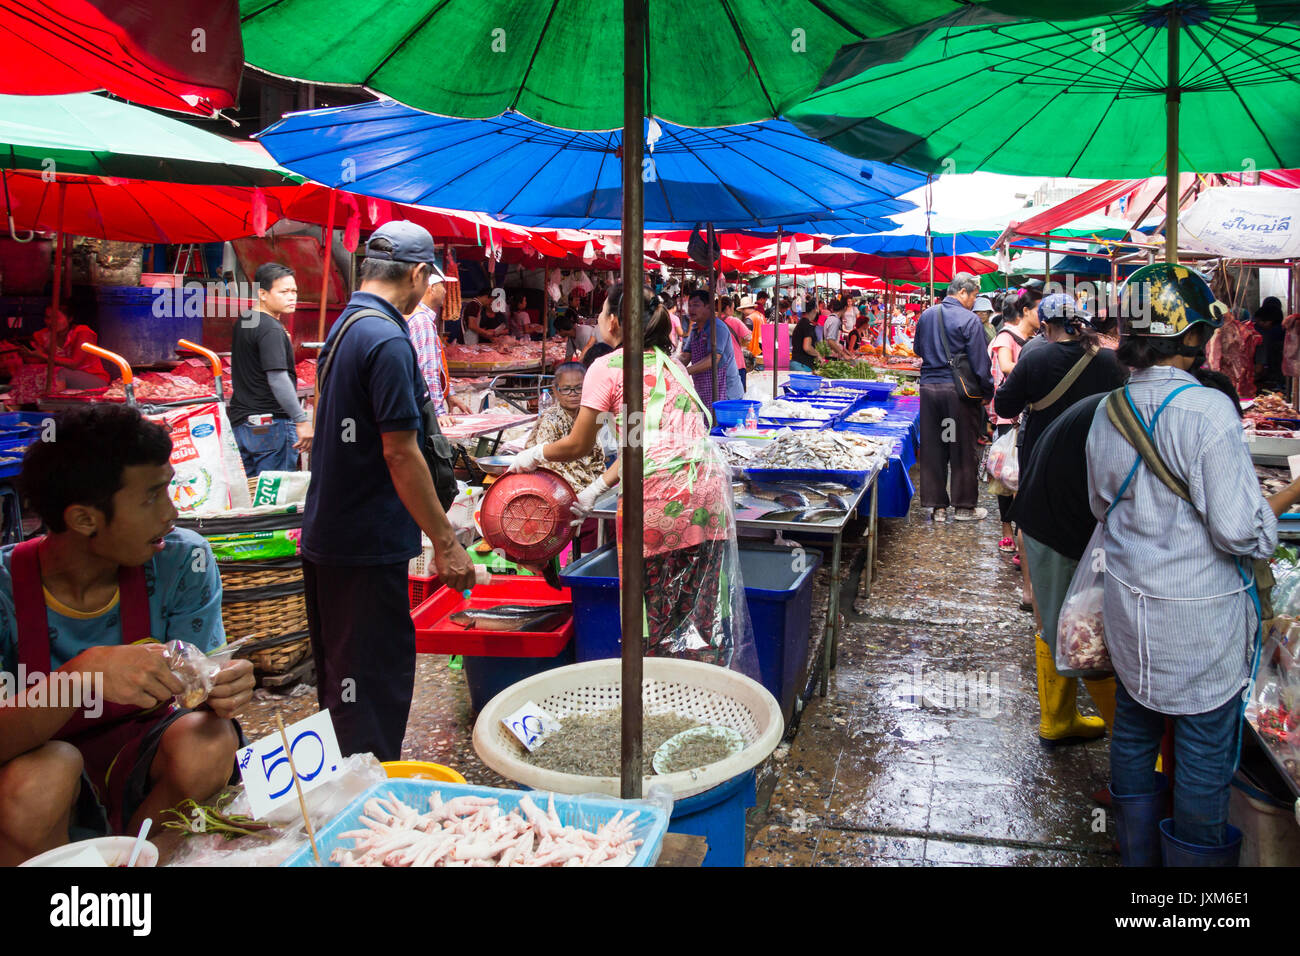 Customers and vendors on Khlong Toei wet market, Bangkok, Thailand Stock Photo